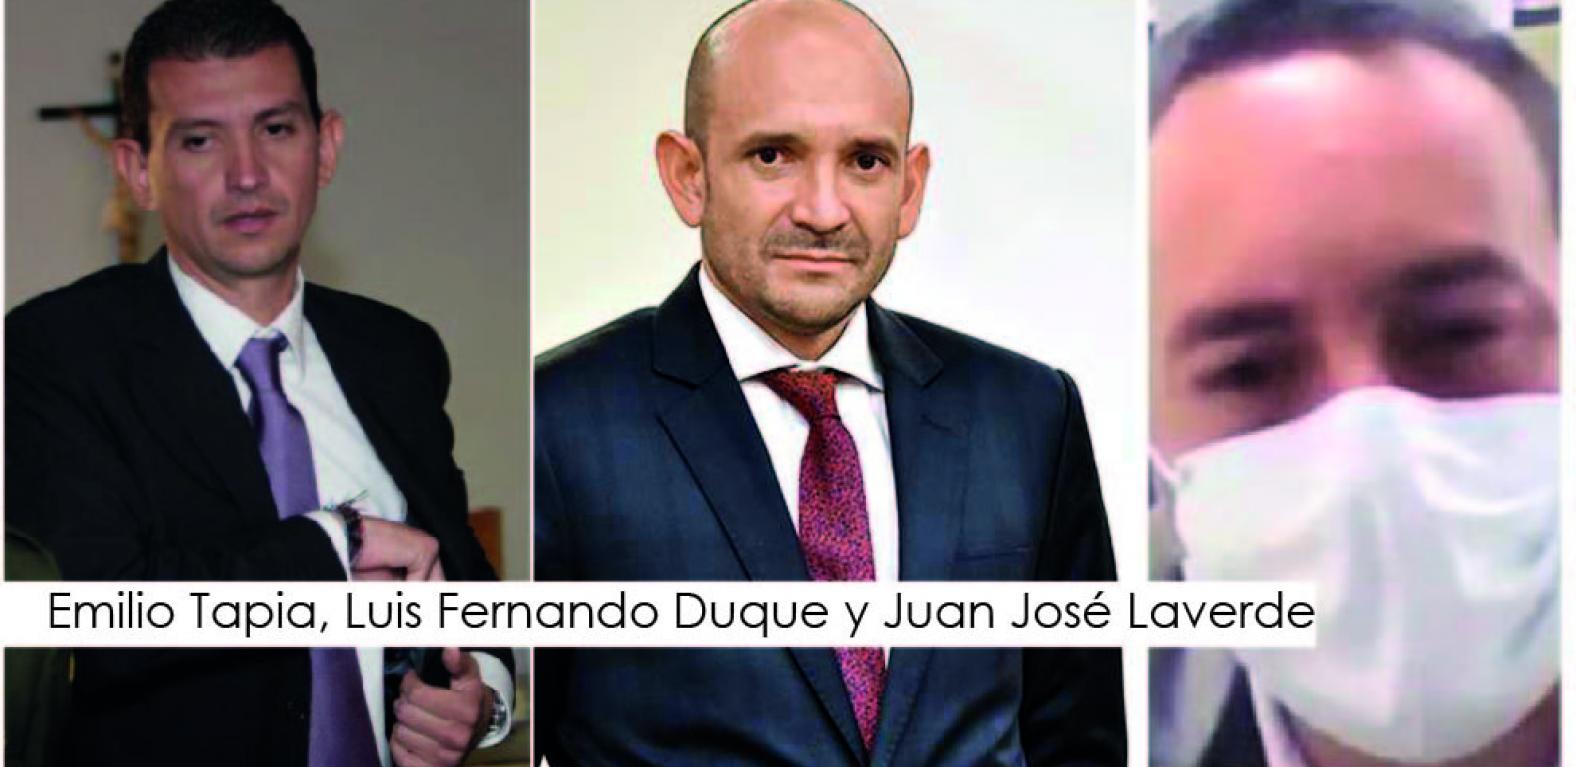 Emilio Tapia, Luis Fernando Duque y Juan José Laverde